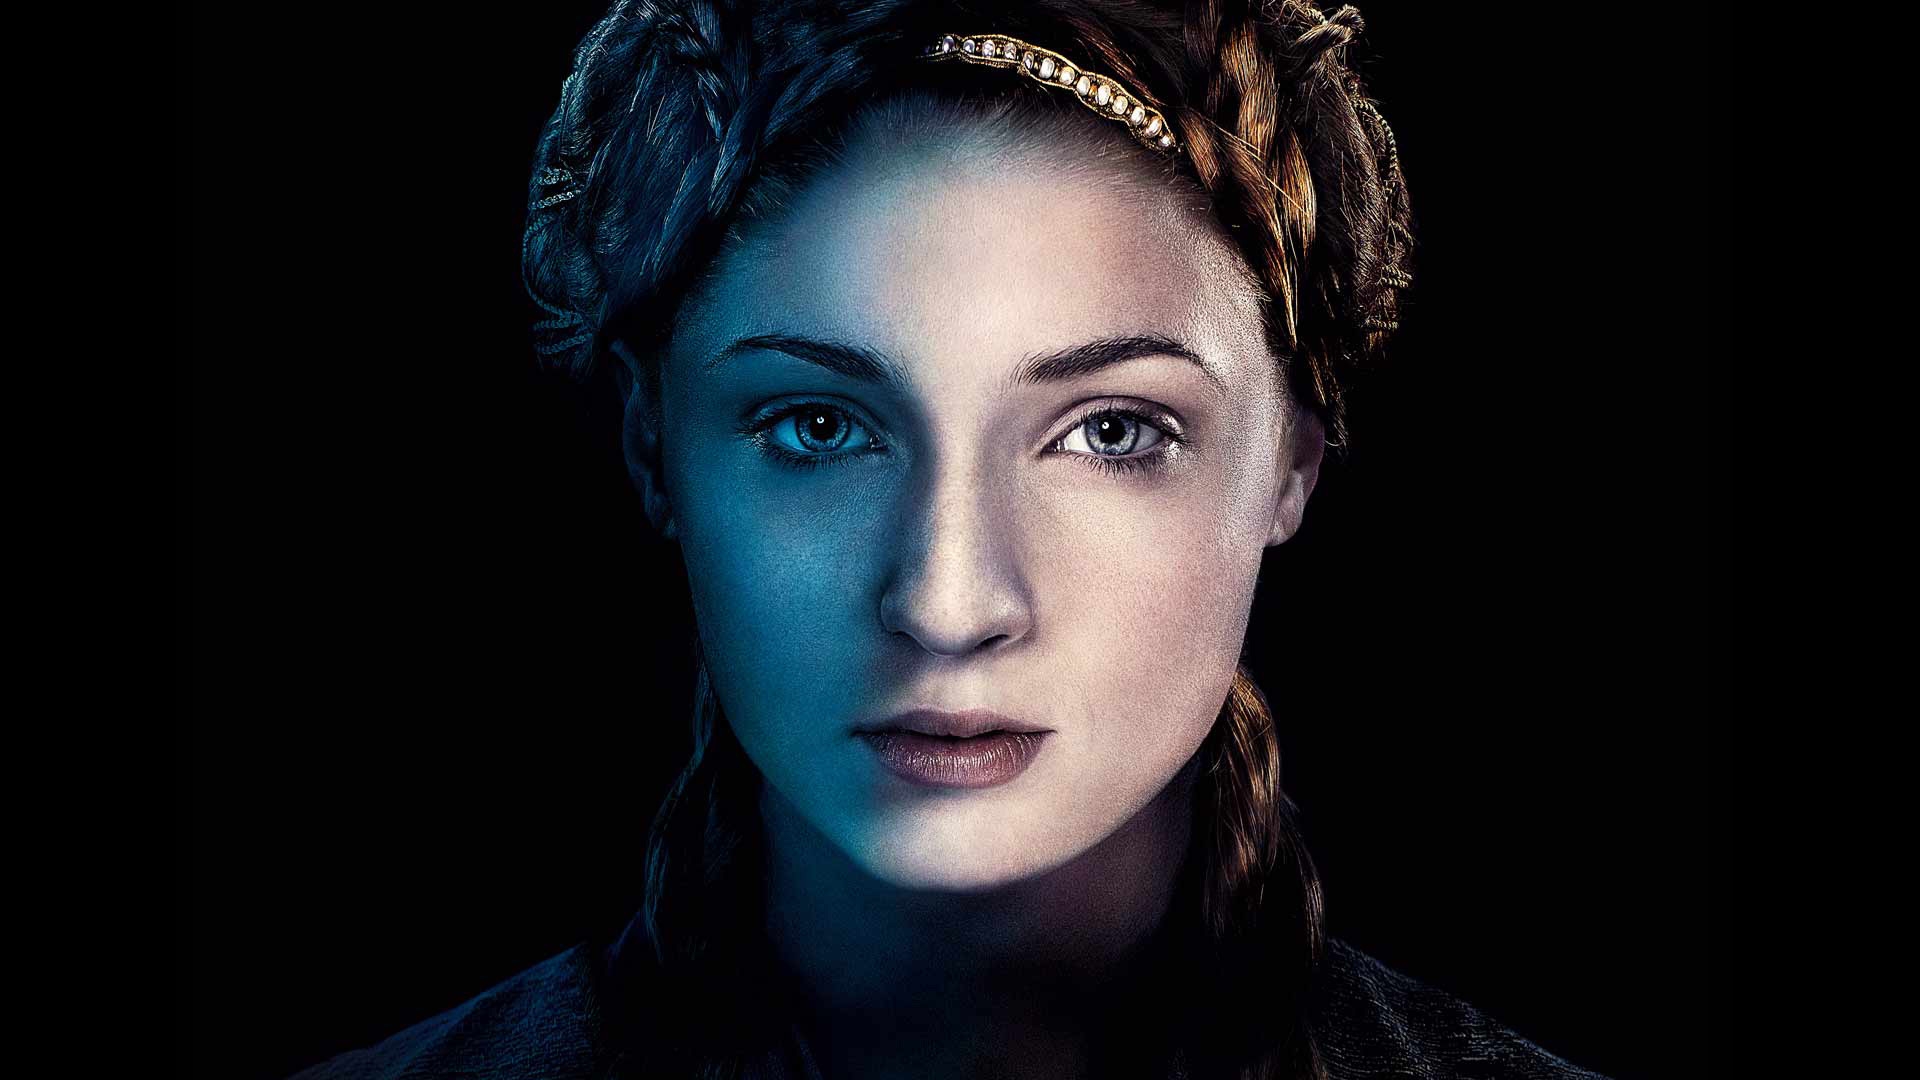 Sansa Stark Game of Thrones for 1920 x 1080 HDTV 1080p resolution